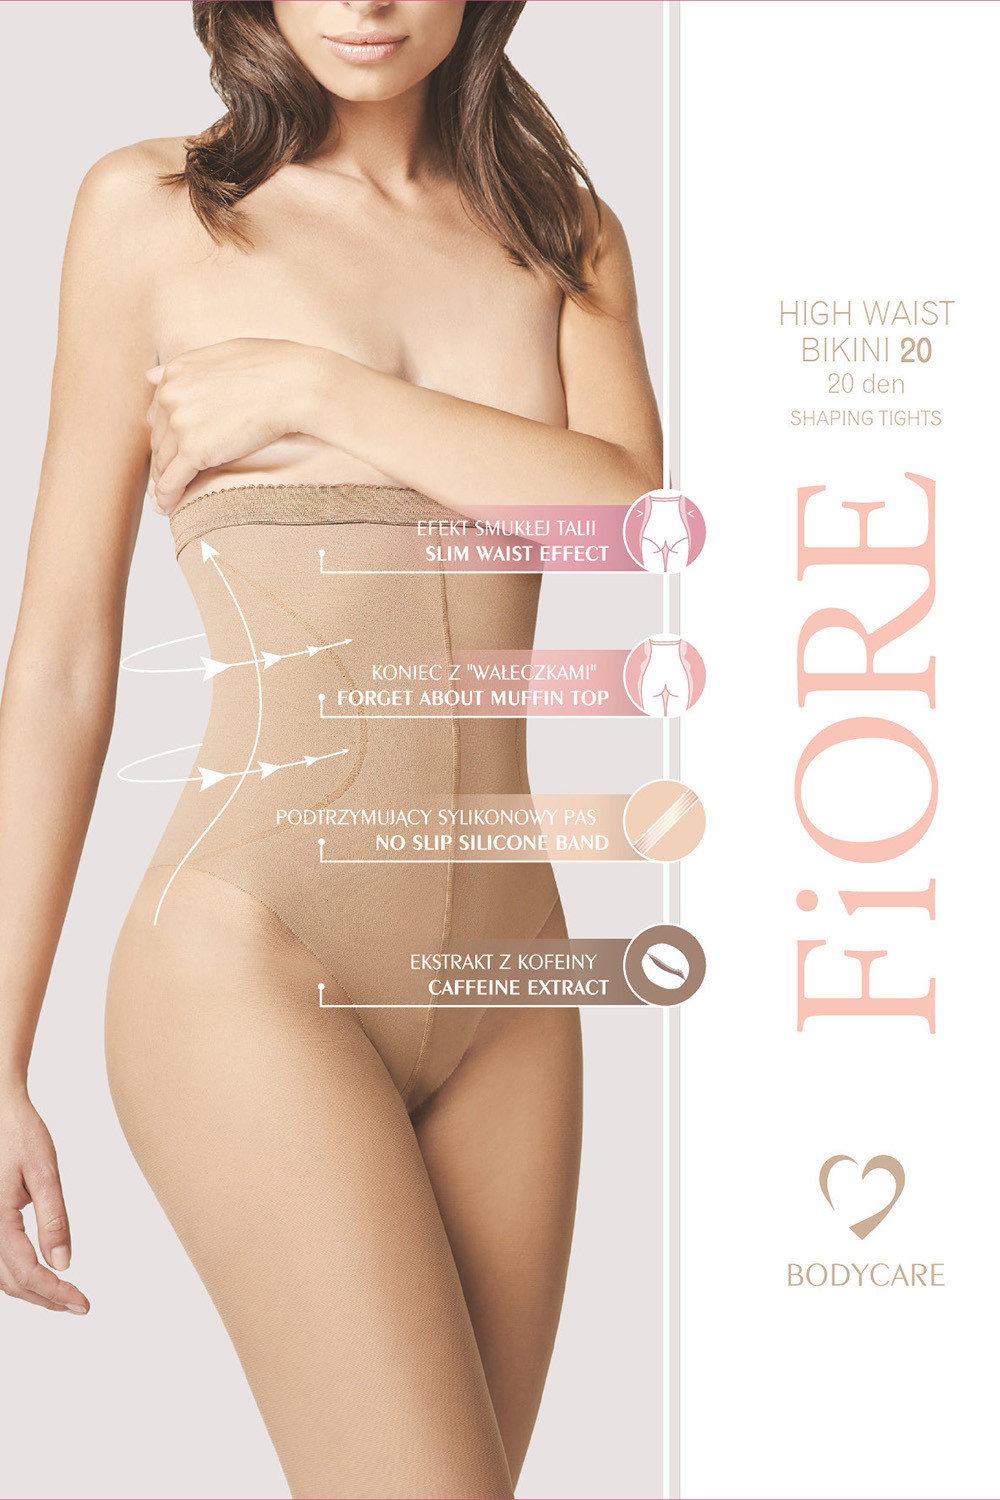 Fiore High Waist Bikini 20 den M5218 kolor:light natural 3-M